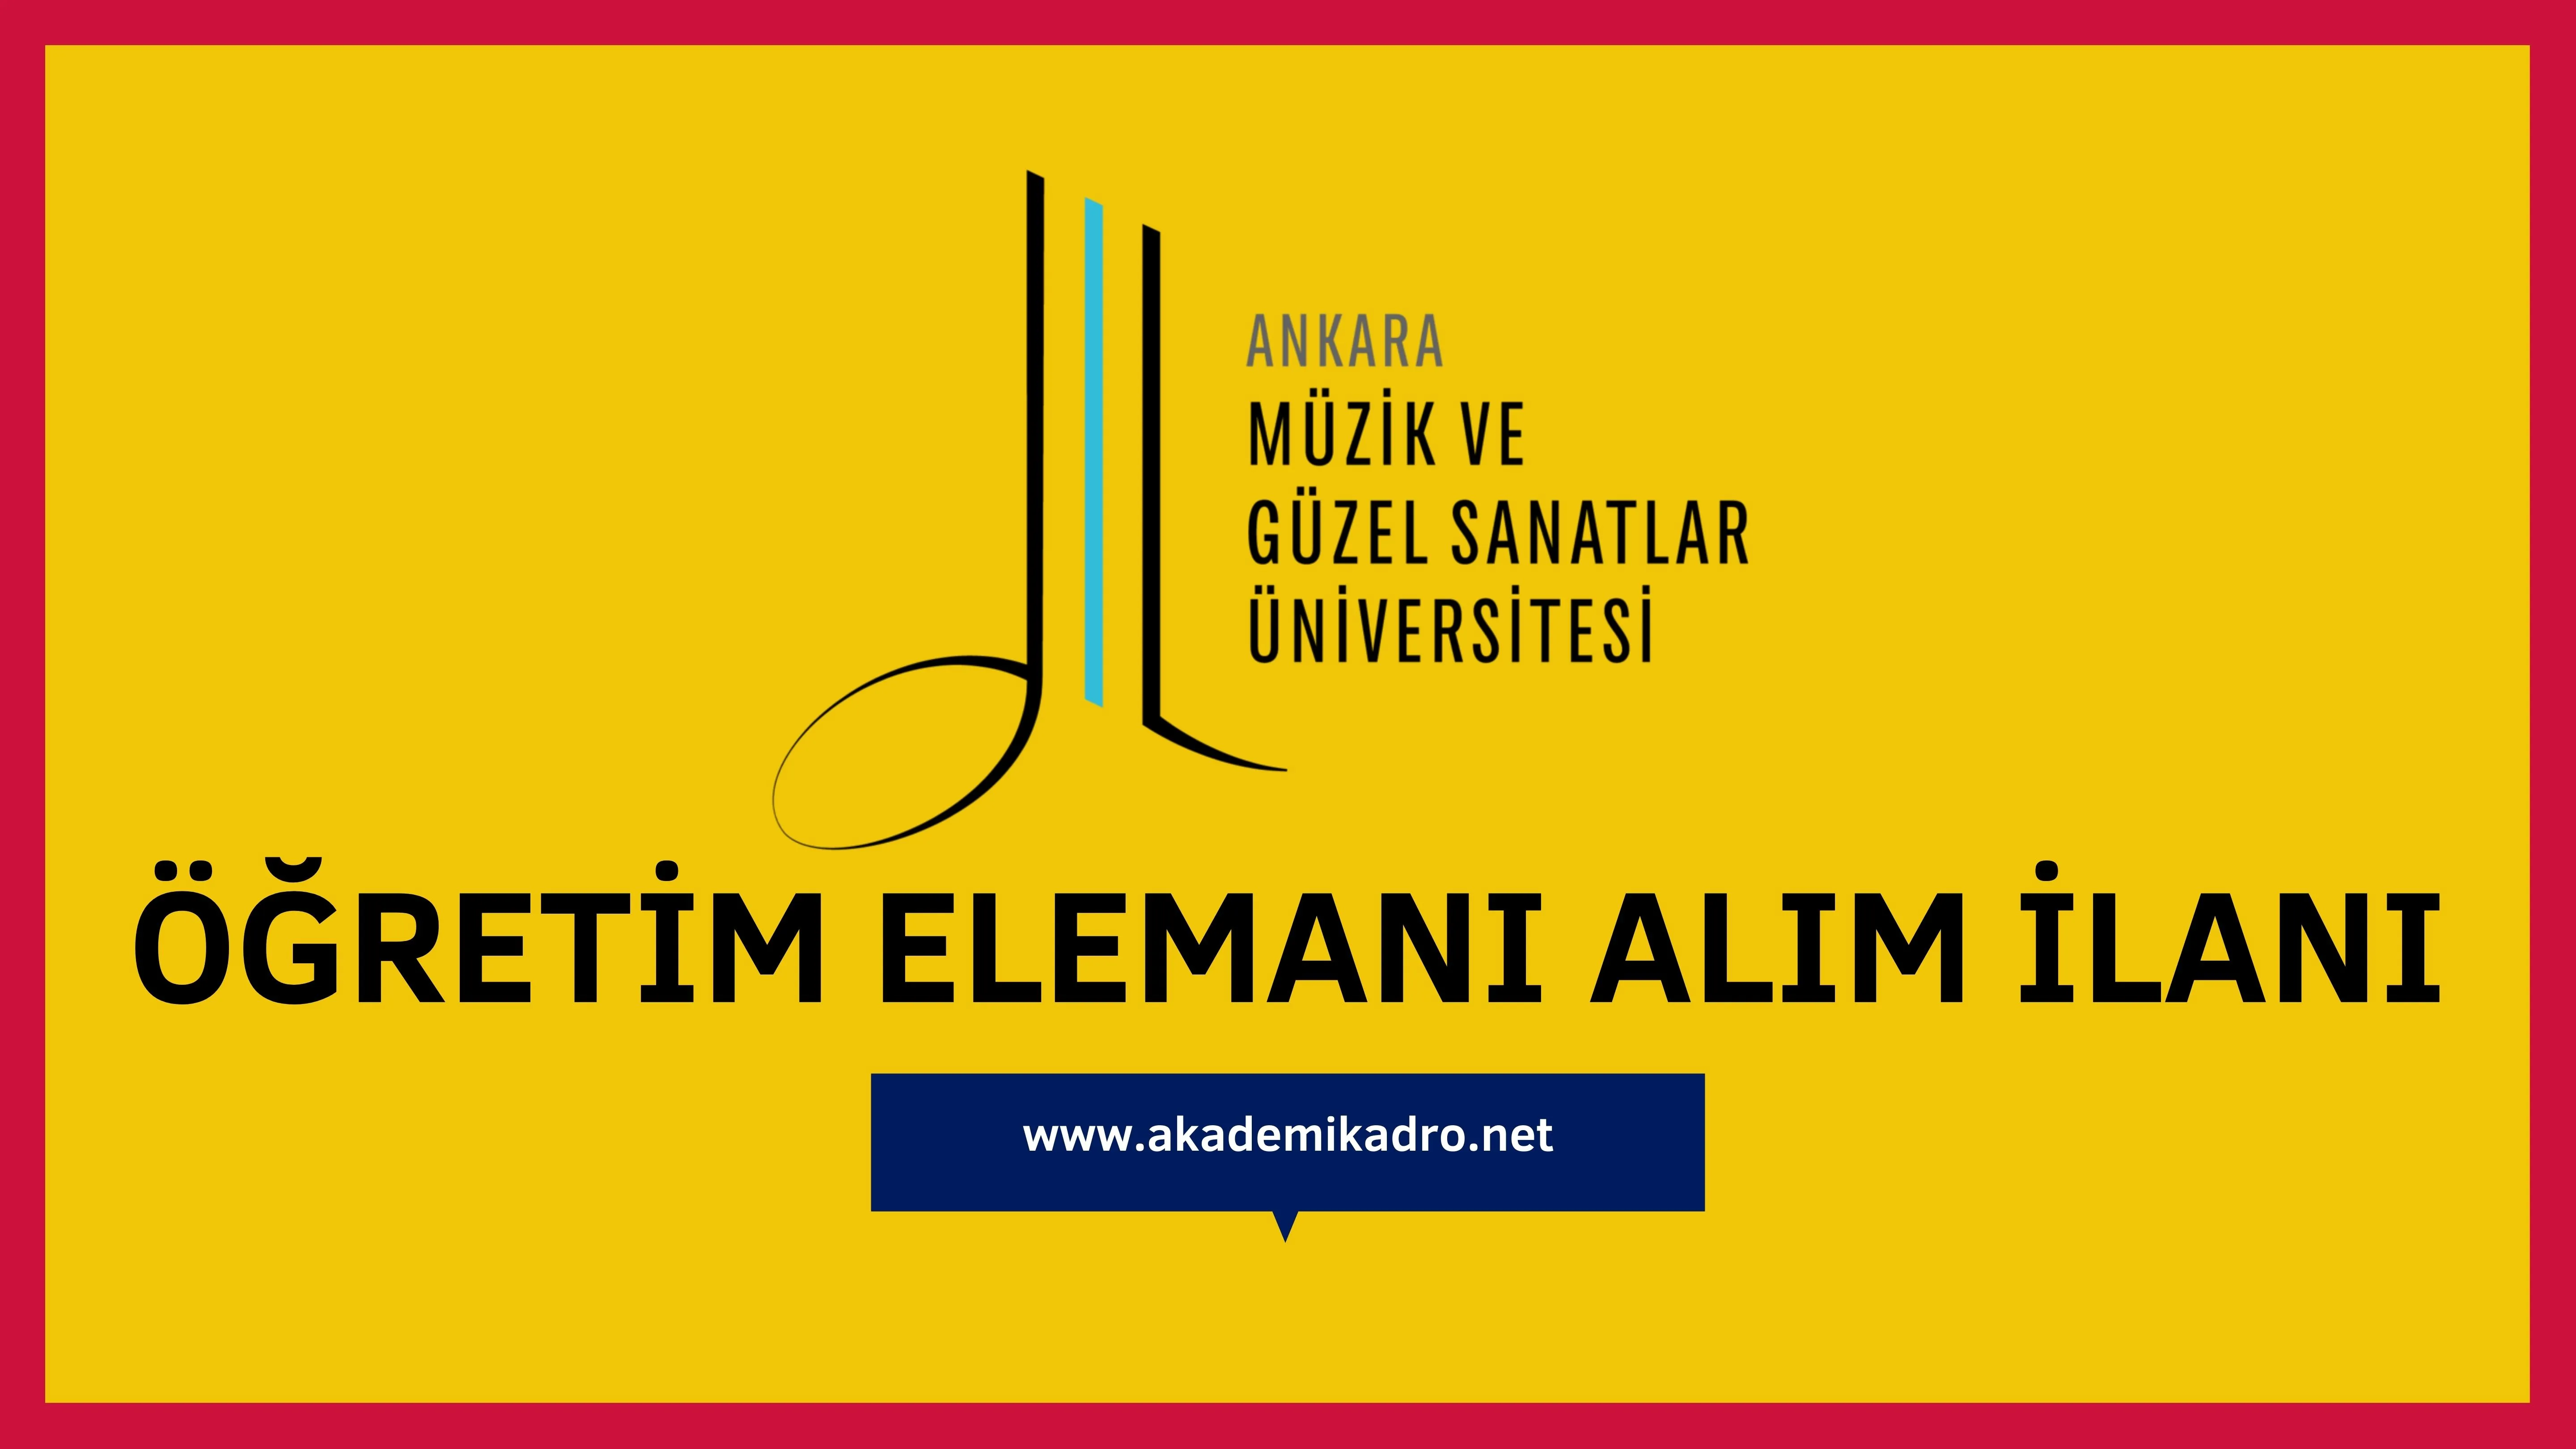 Ankara Müzik ve Güzel Sanatlar Üniversitesi 3 öğretim görevlisi alacaktır.